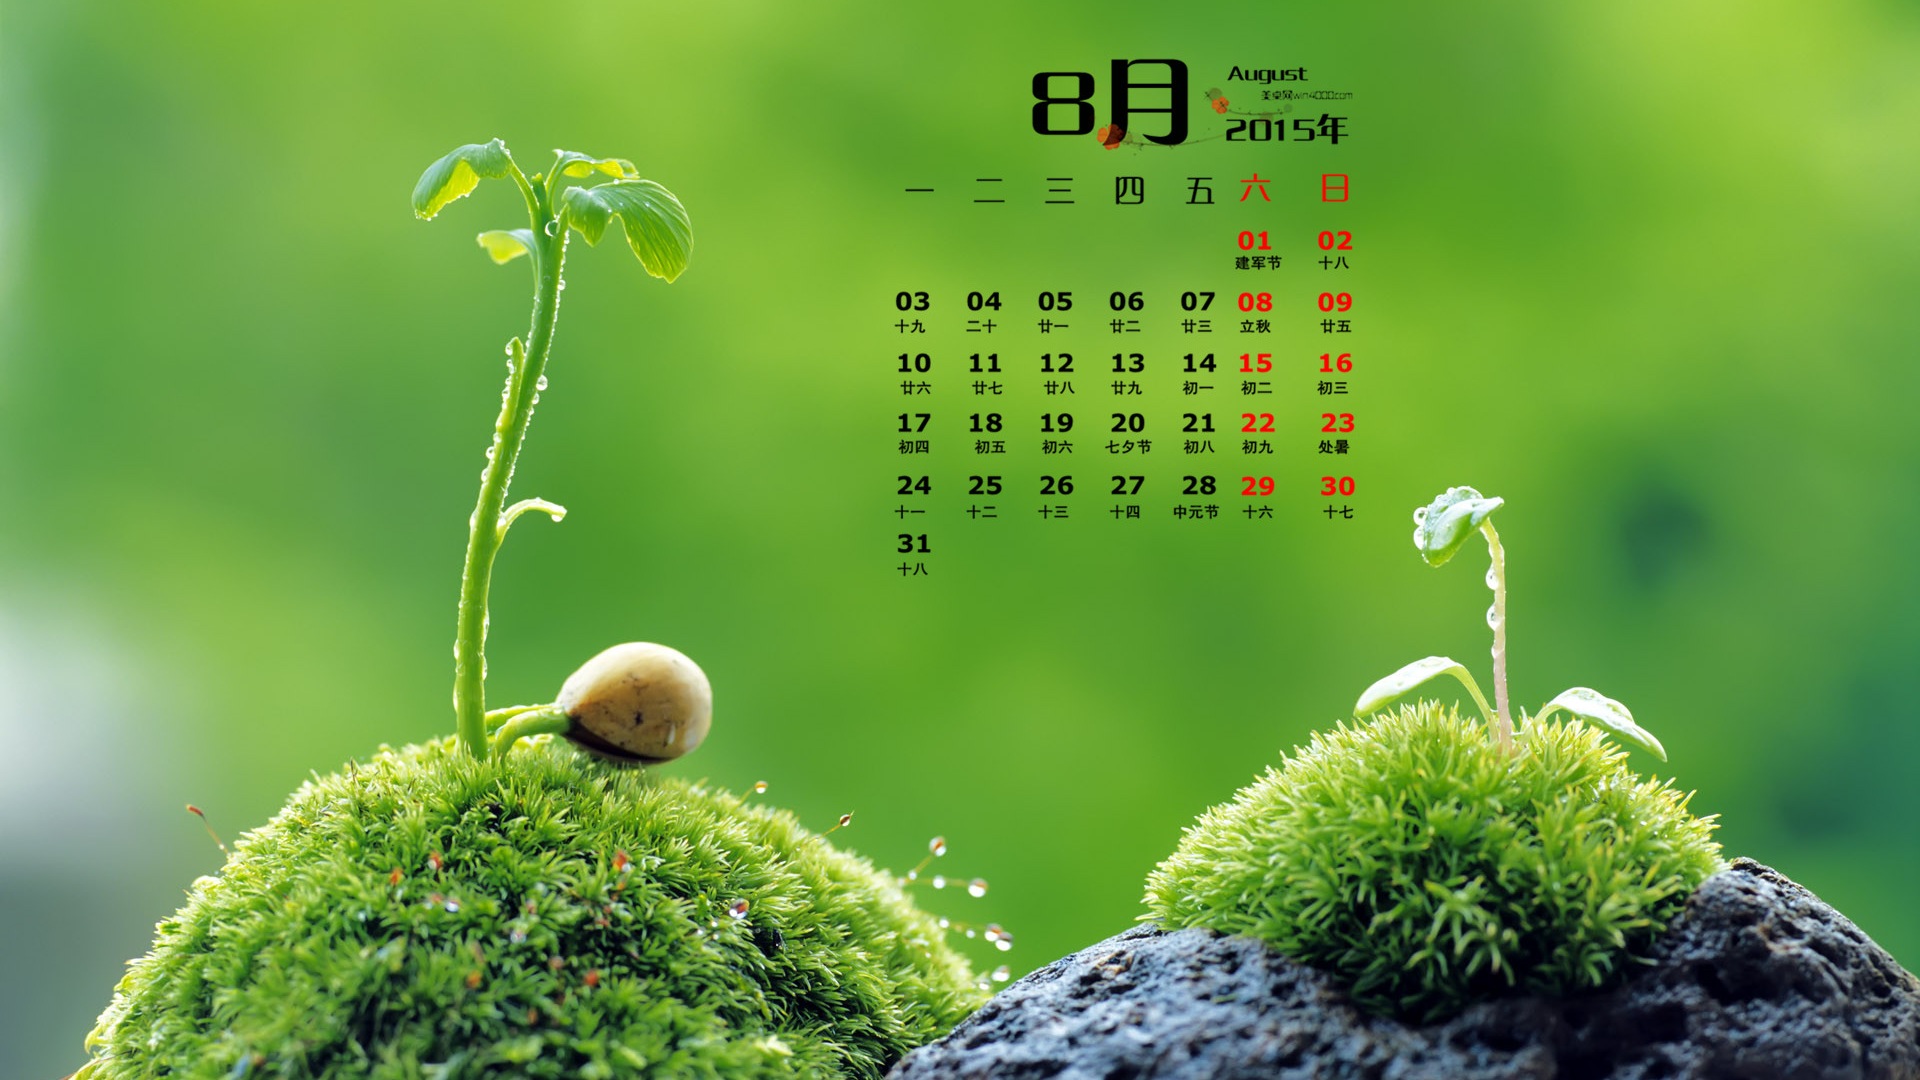 08. 2015 kalendář tapety (1) #16 - 1920x1080